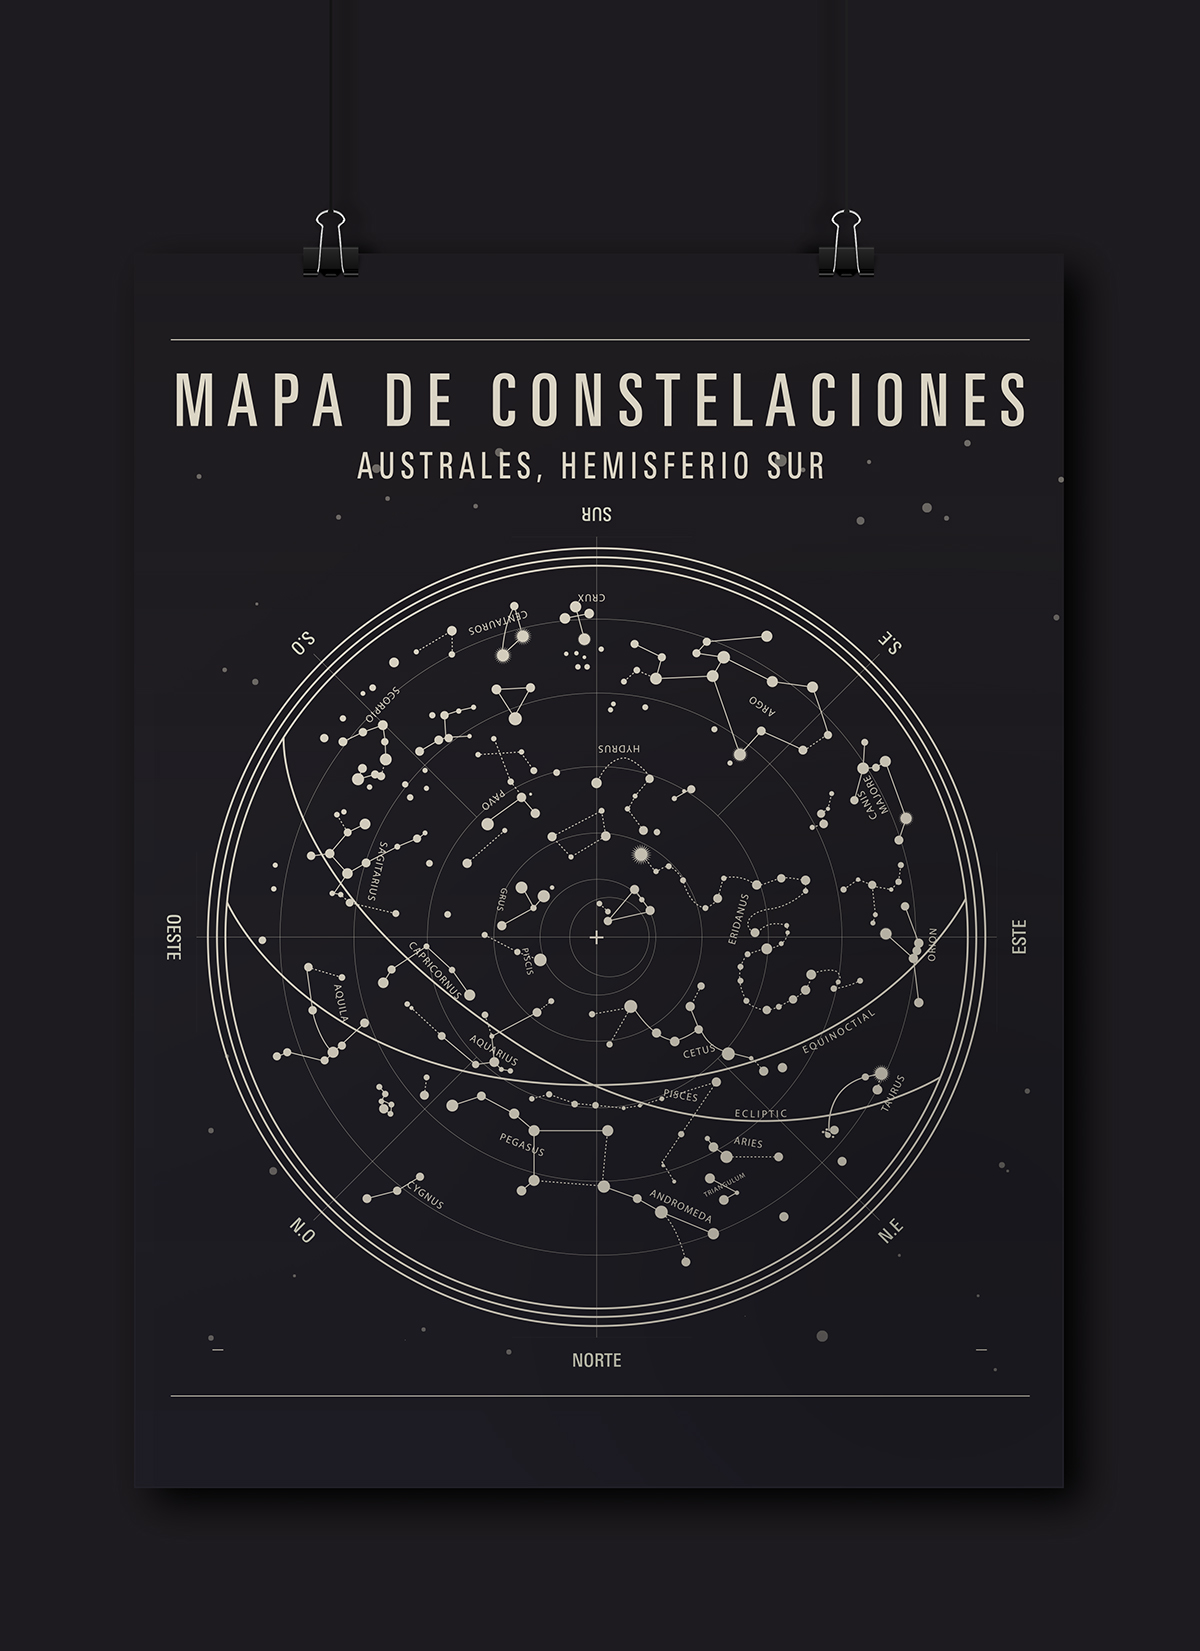 constelaciones anatomia australes estrellas univers universo tipografia adrian frutiger taurus mapa stars constelations Uniandes diseño uniandes Historia tipografía